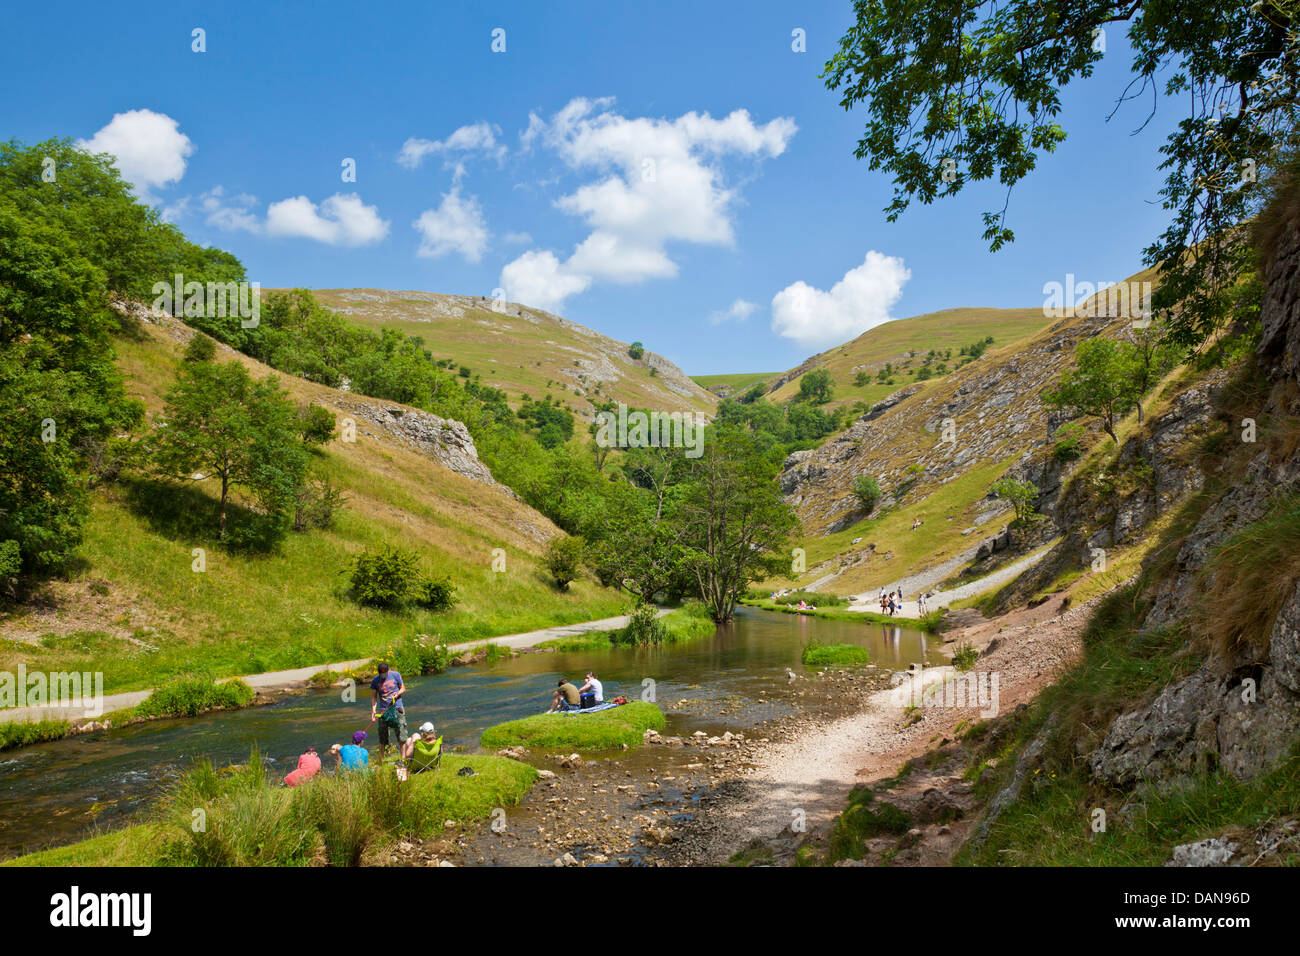 Les touristes assis près de la rivière Dove dans Dovedale Derbyshire Peak district parc national Angleterre UK GB Europe Banque D'Images